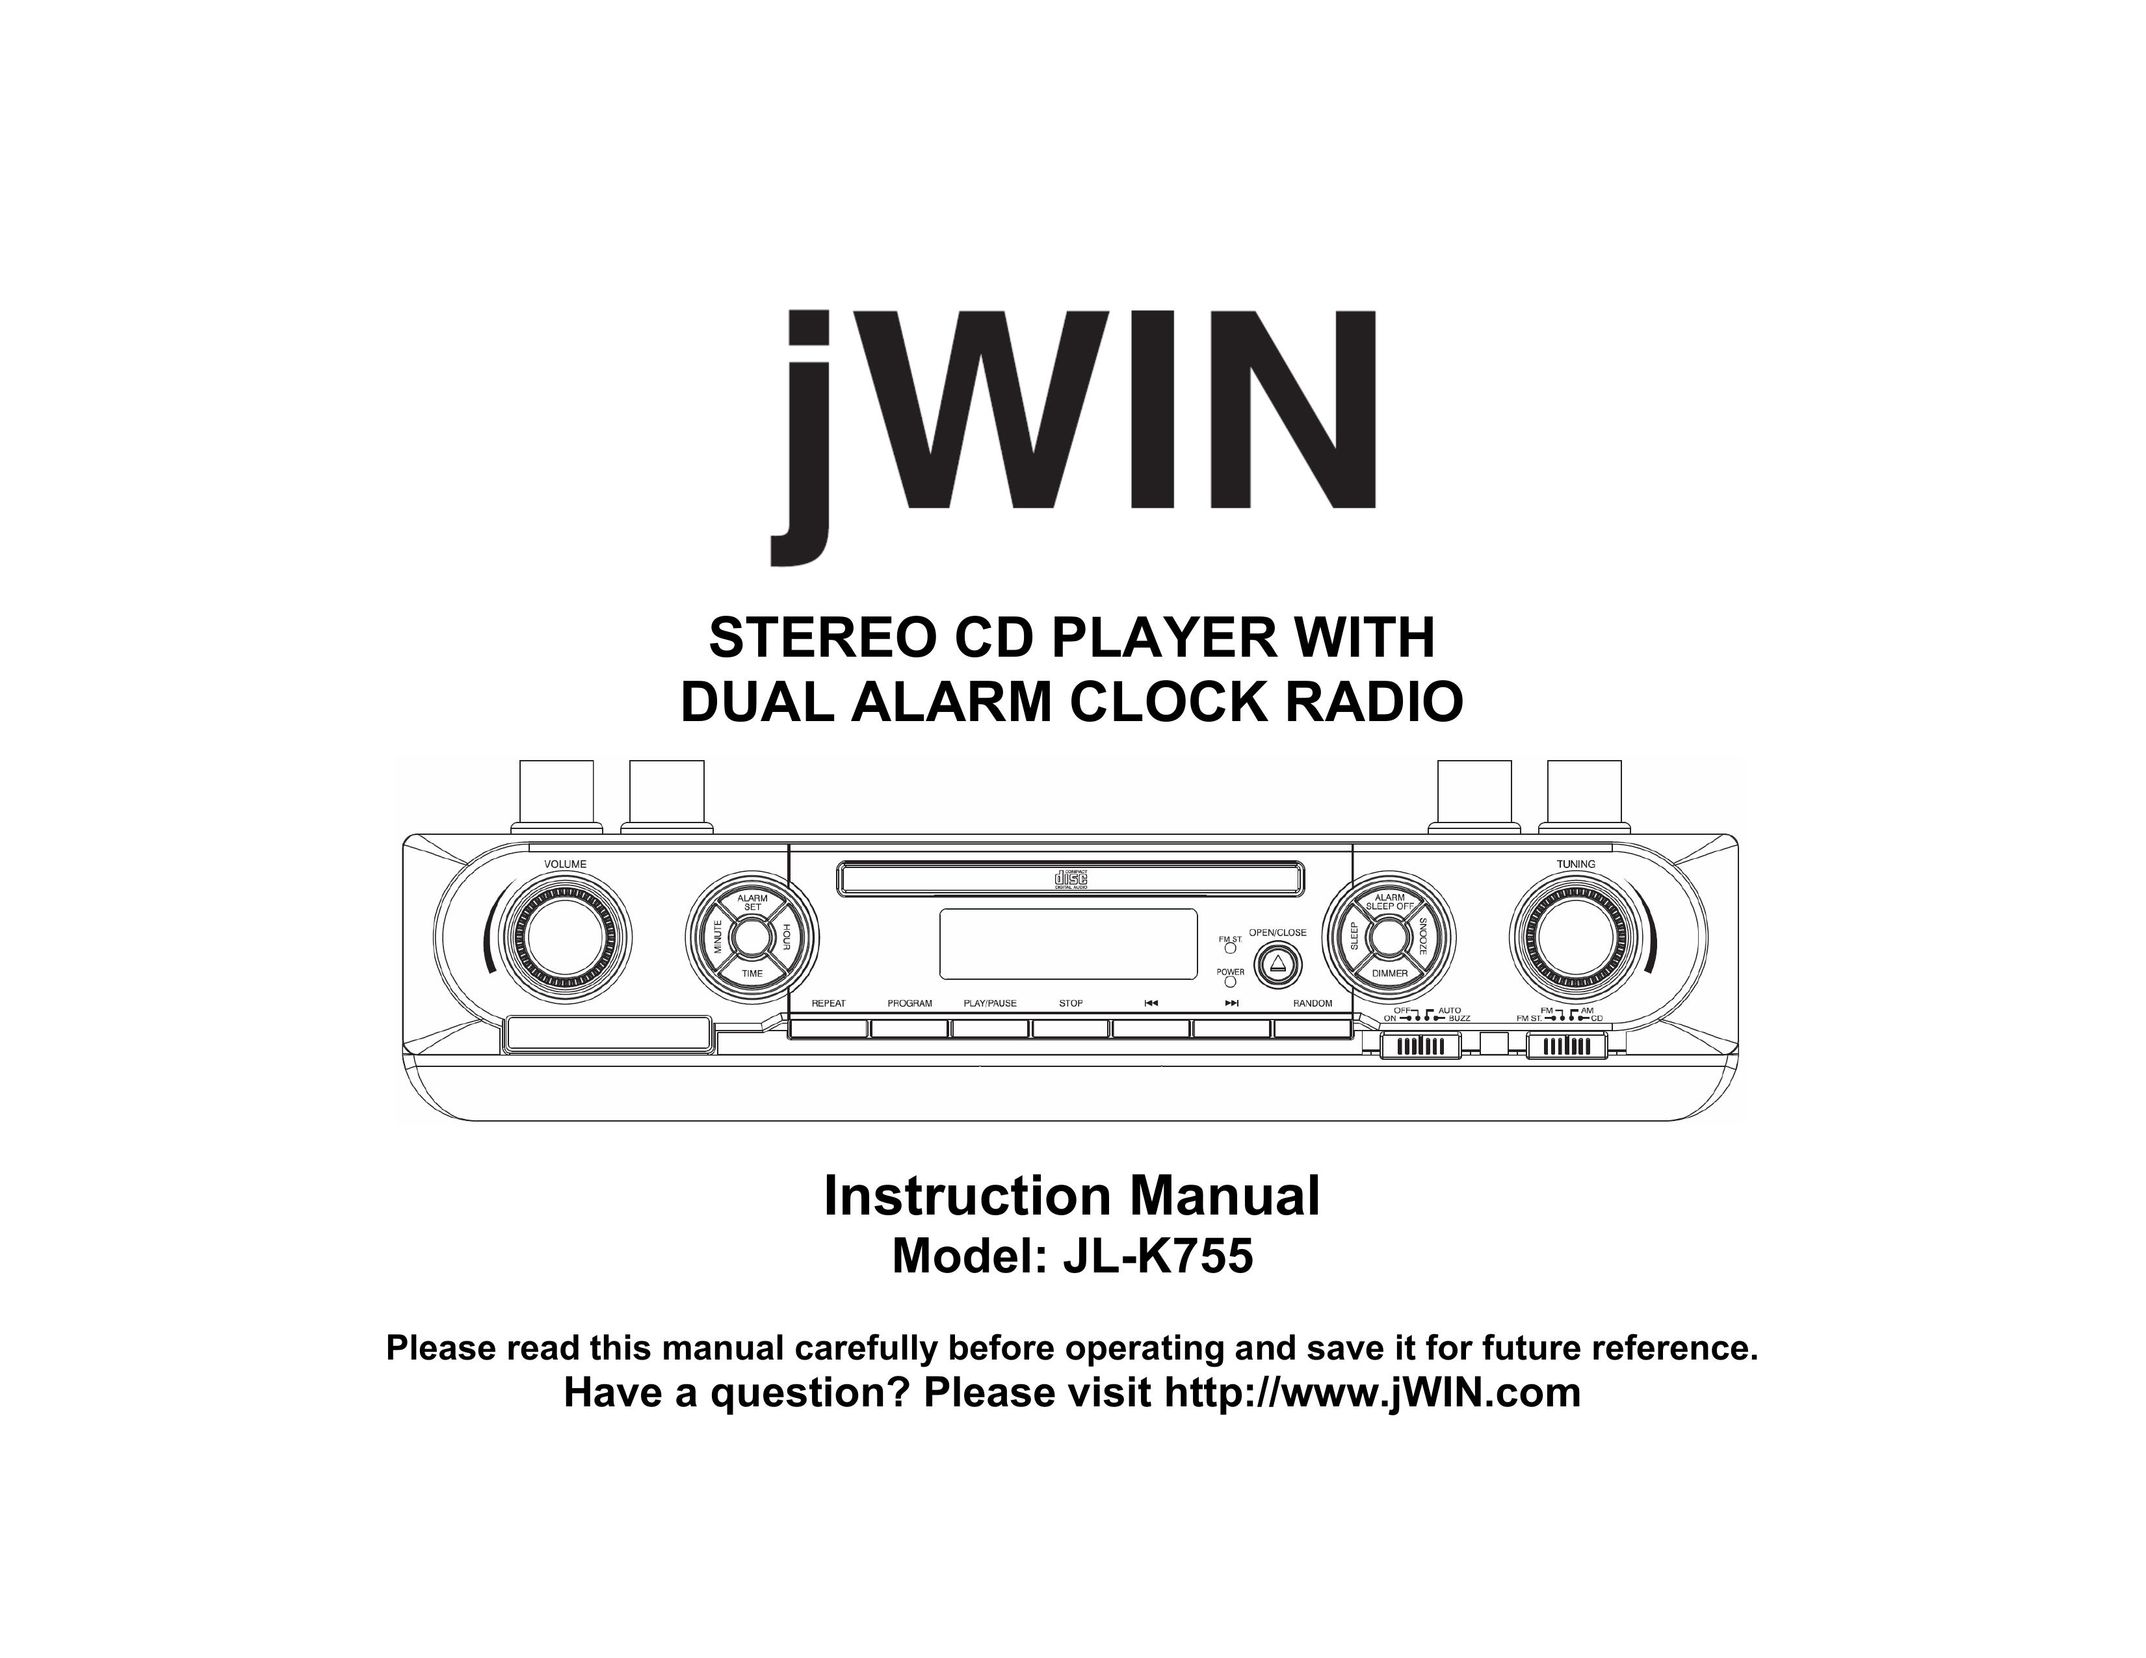 Jwin JL-K755 CD Player User Manual